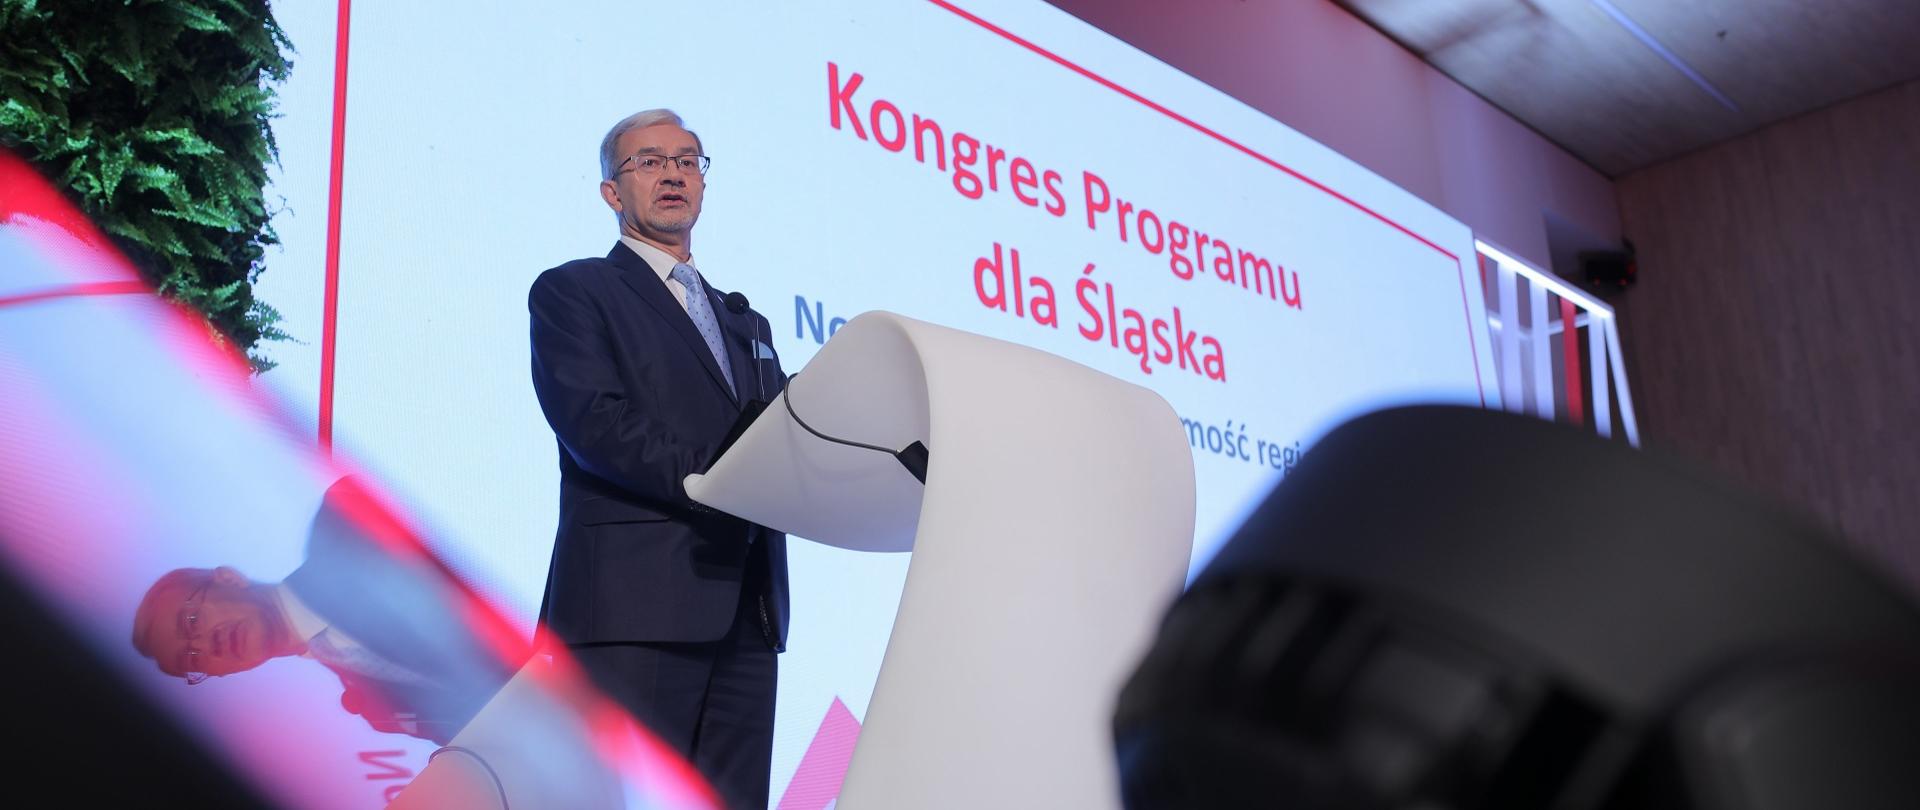 Na zdjęciu stoi minister Jerzy Kwieciński, w tle ekran z napisem "Kongres Programu dla Śląska"